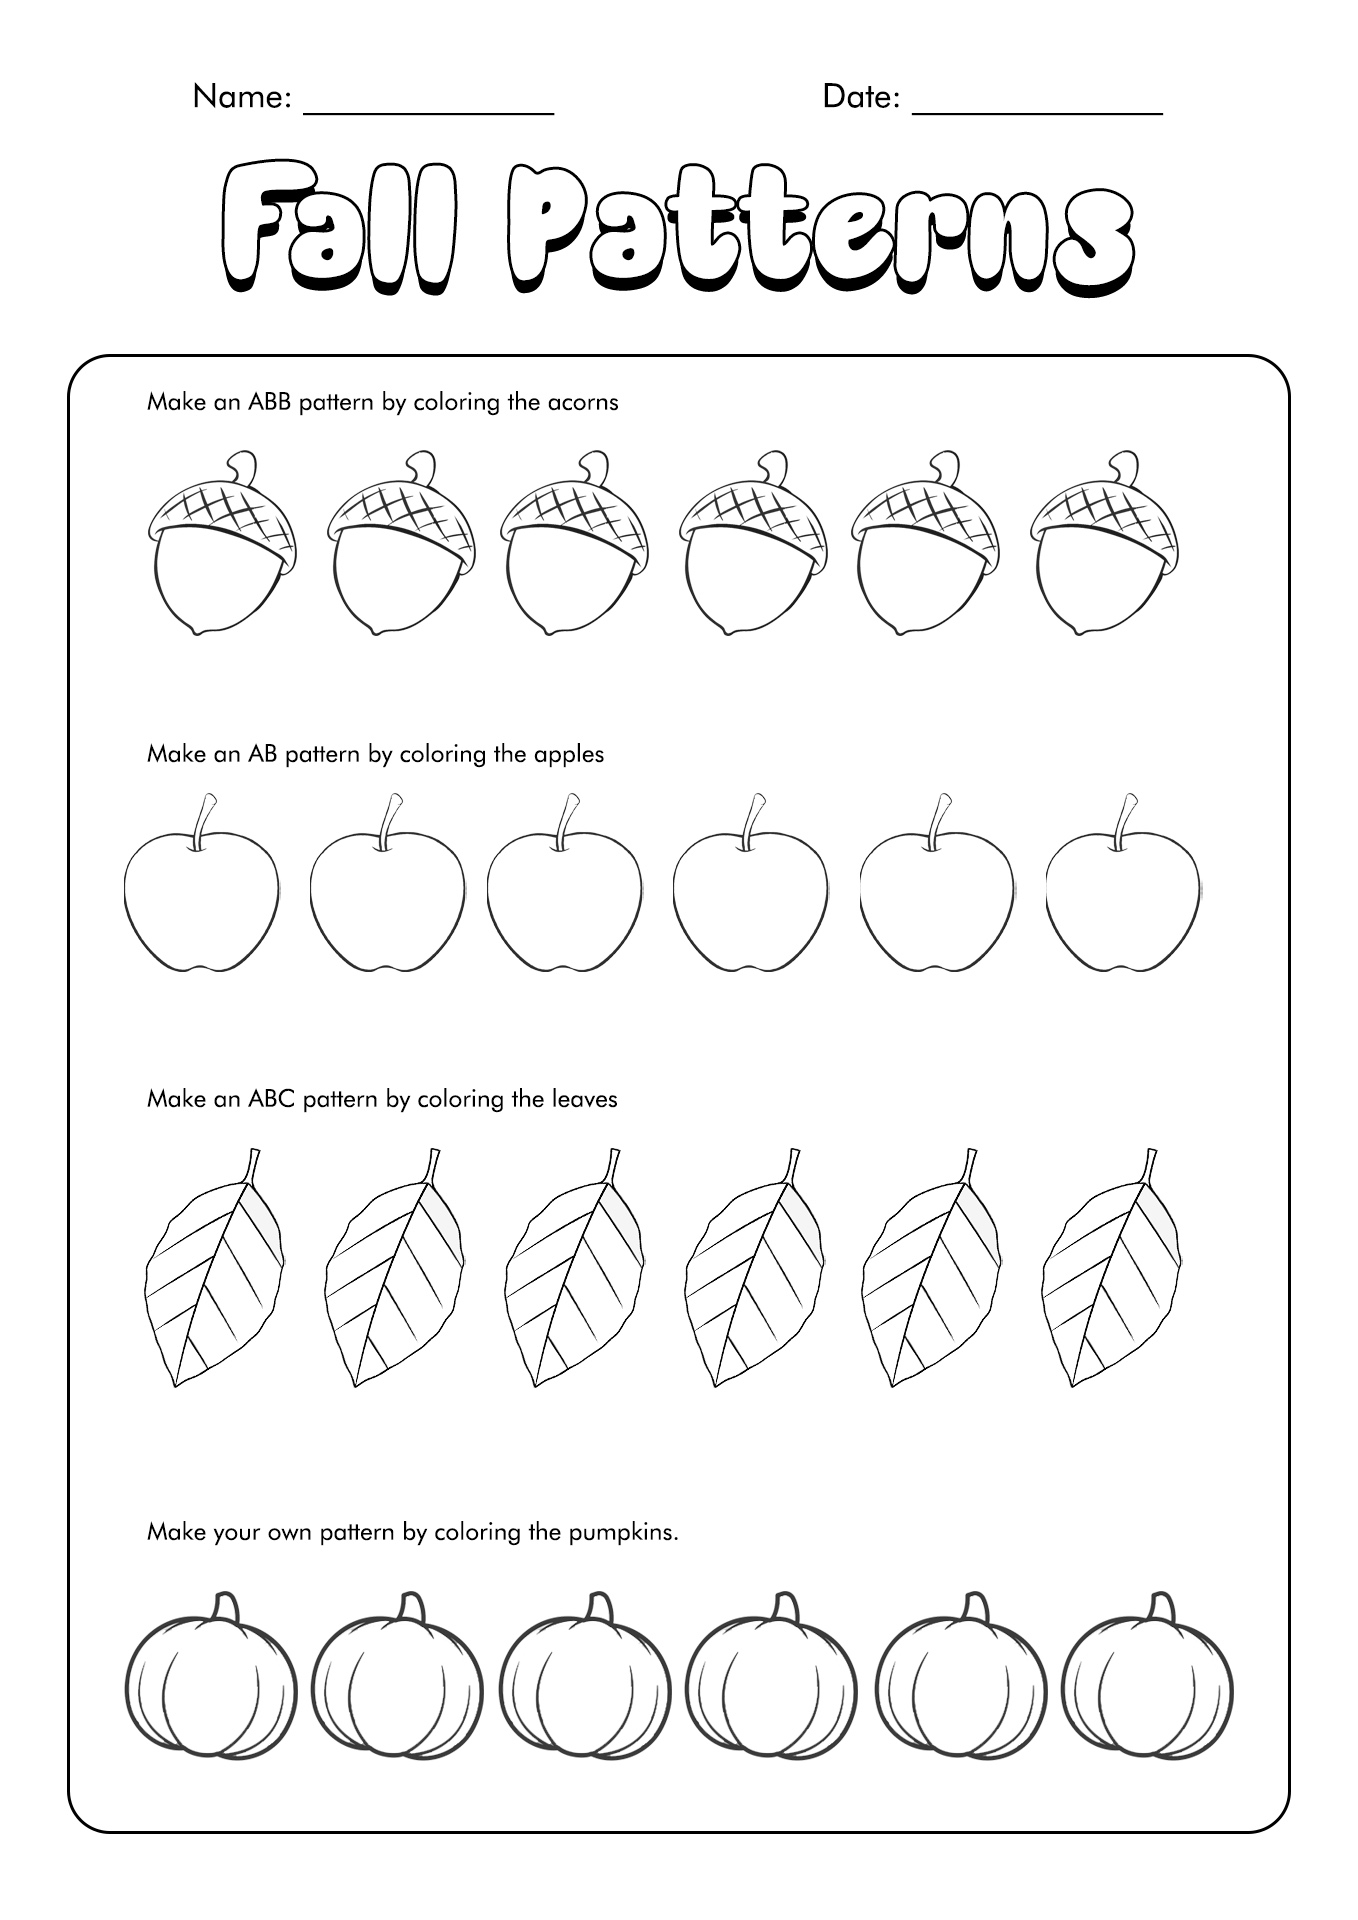 11 Autumn Leaf Patterns Worksheets Free PDF at worksheeto com